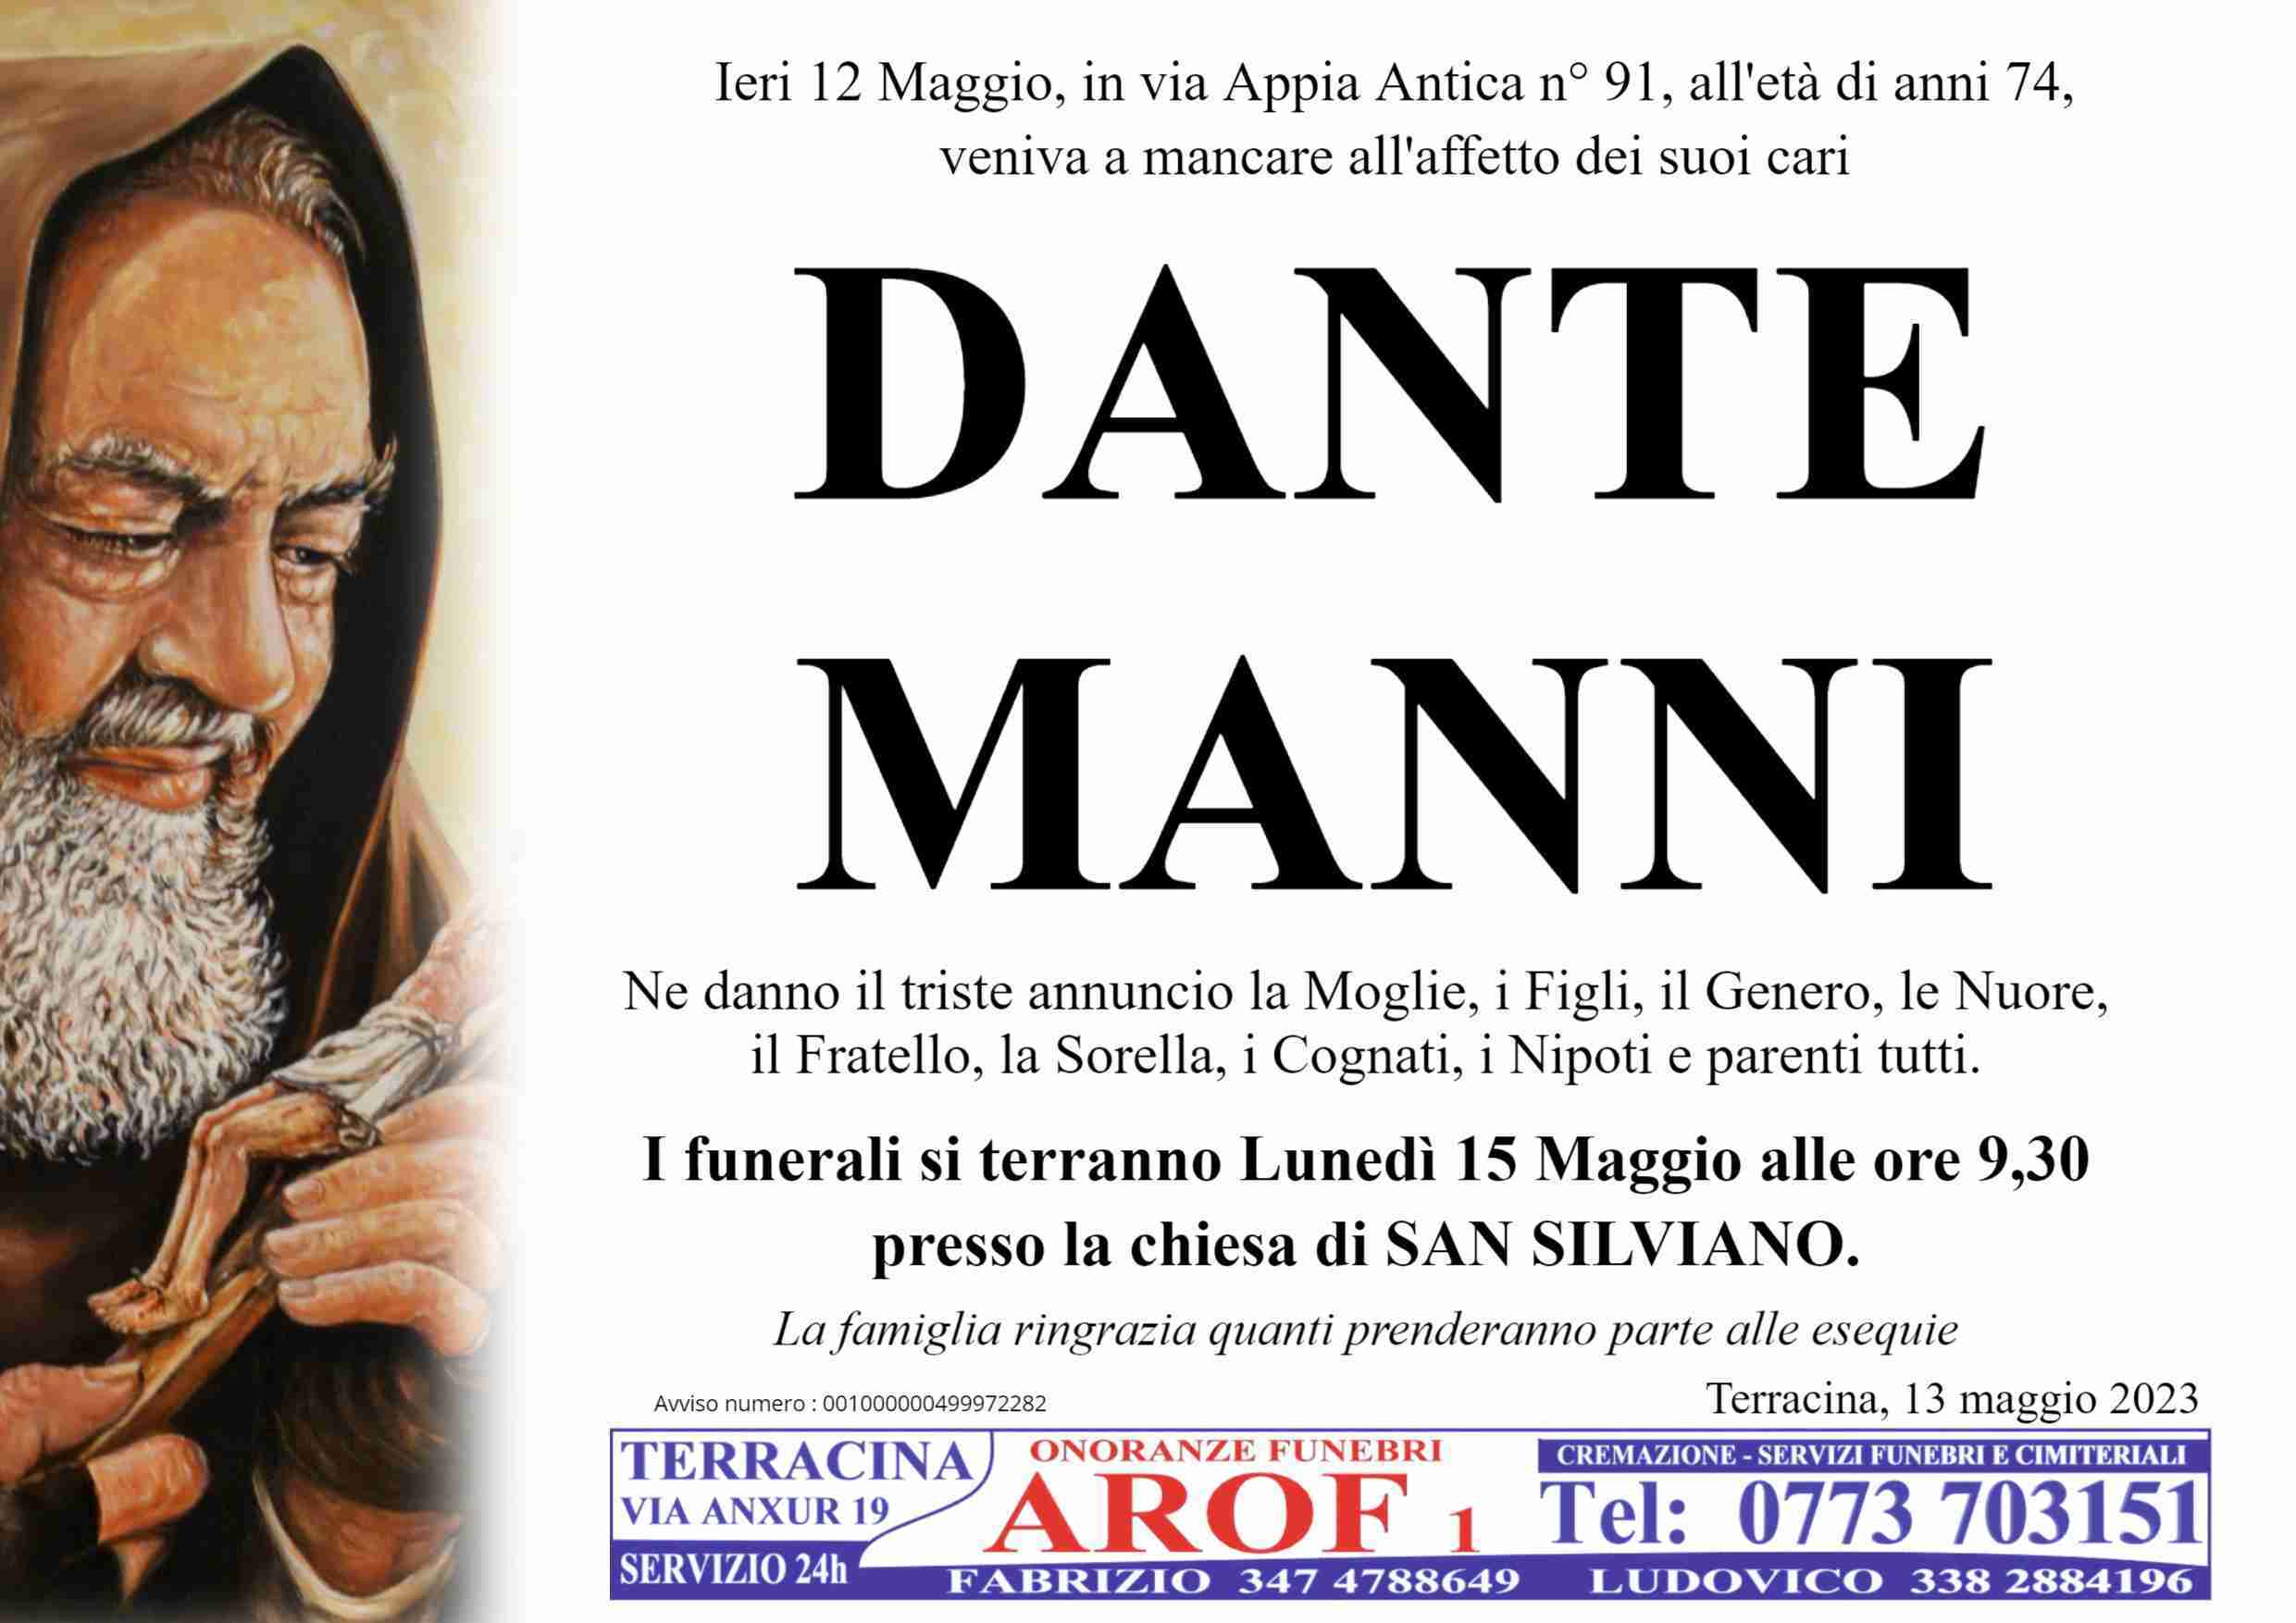 Dante Manni